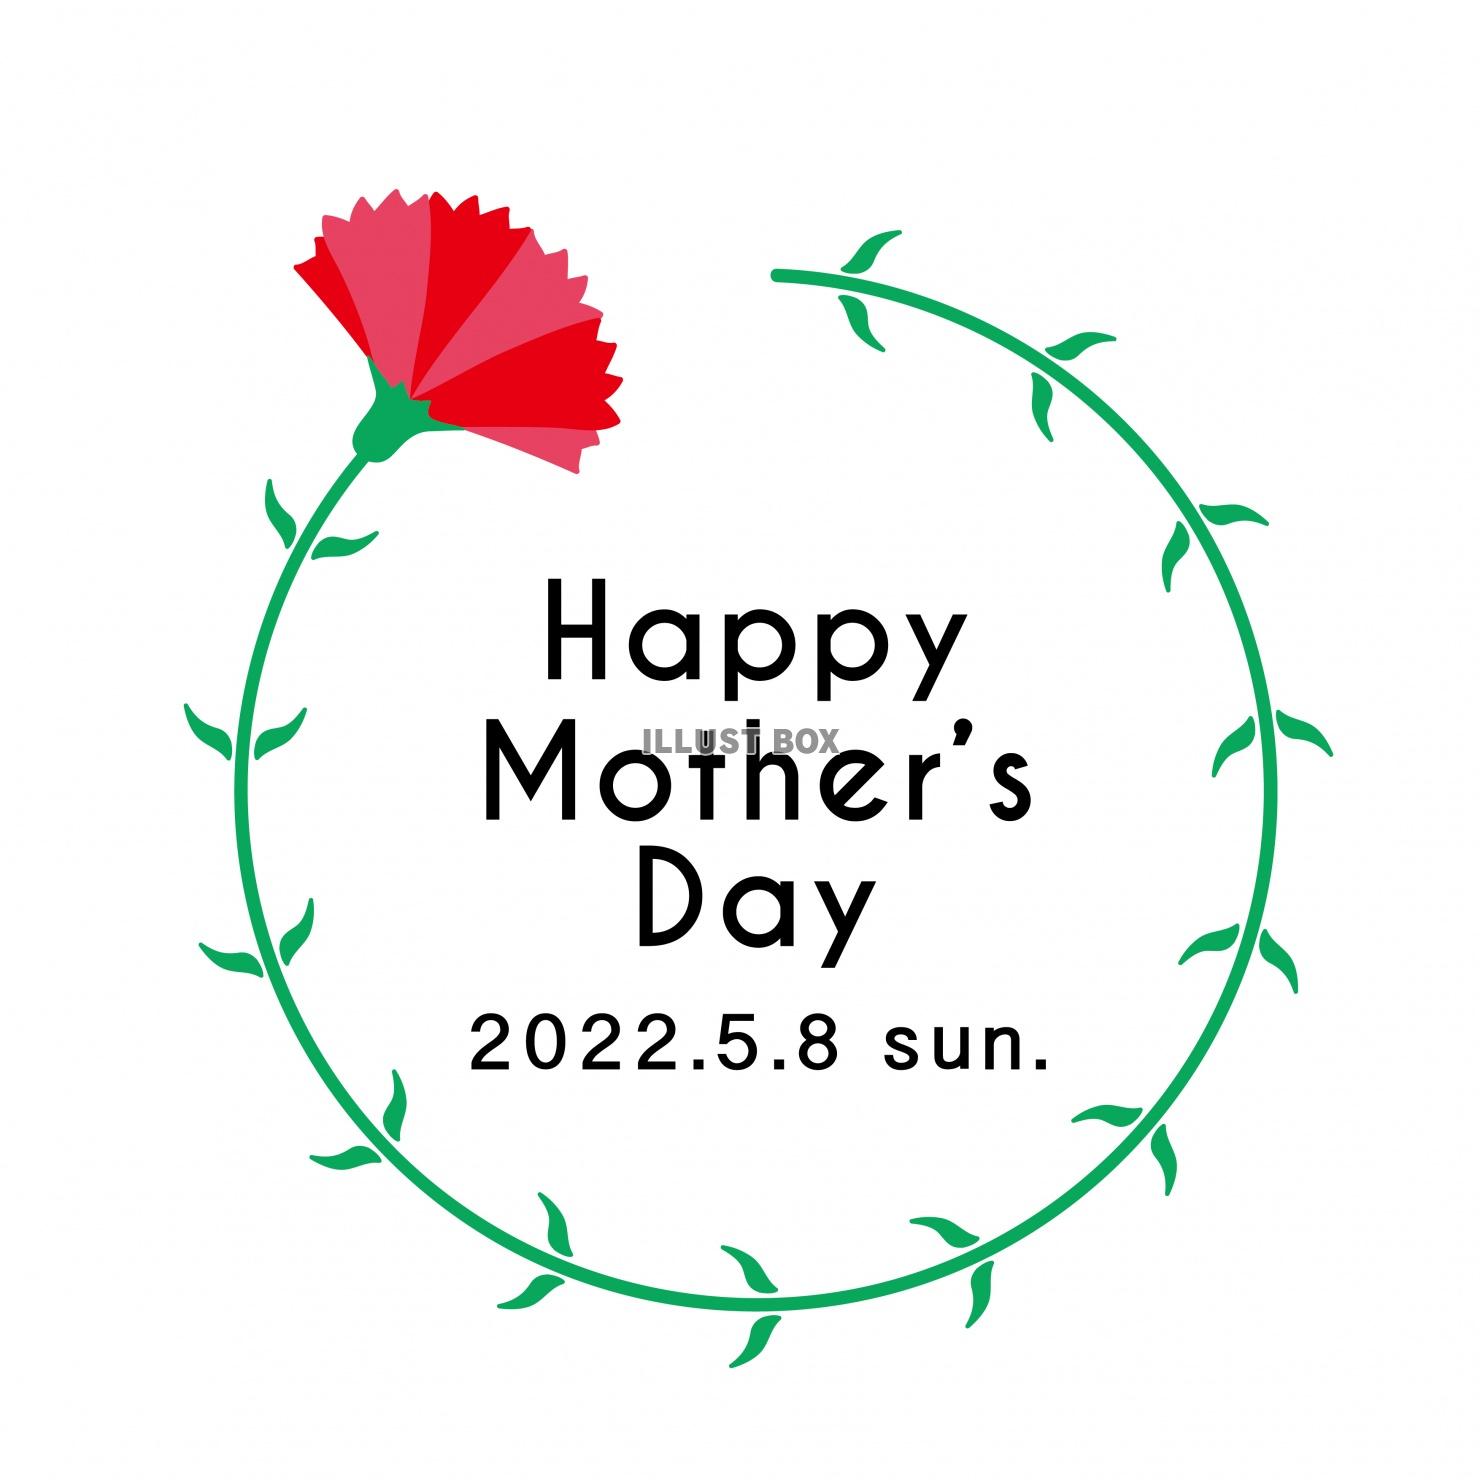 母の日 happy mother's day 2022年 5月8日 文字ありロゴ